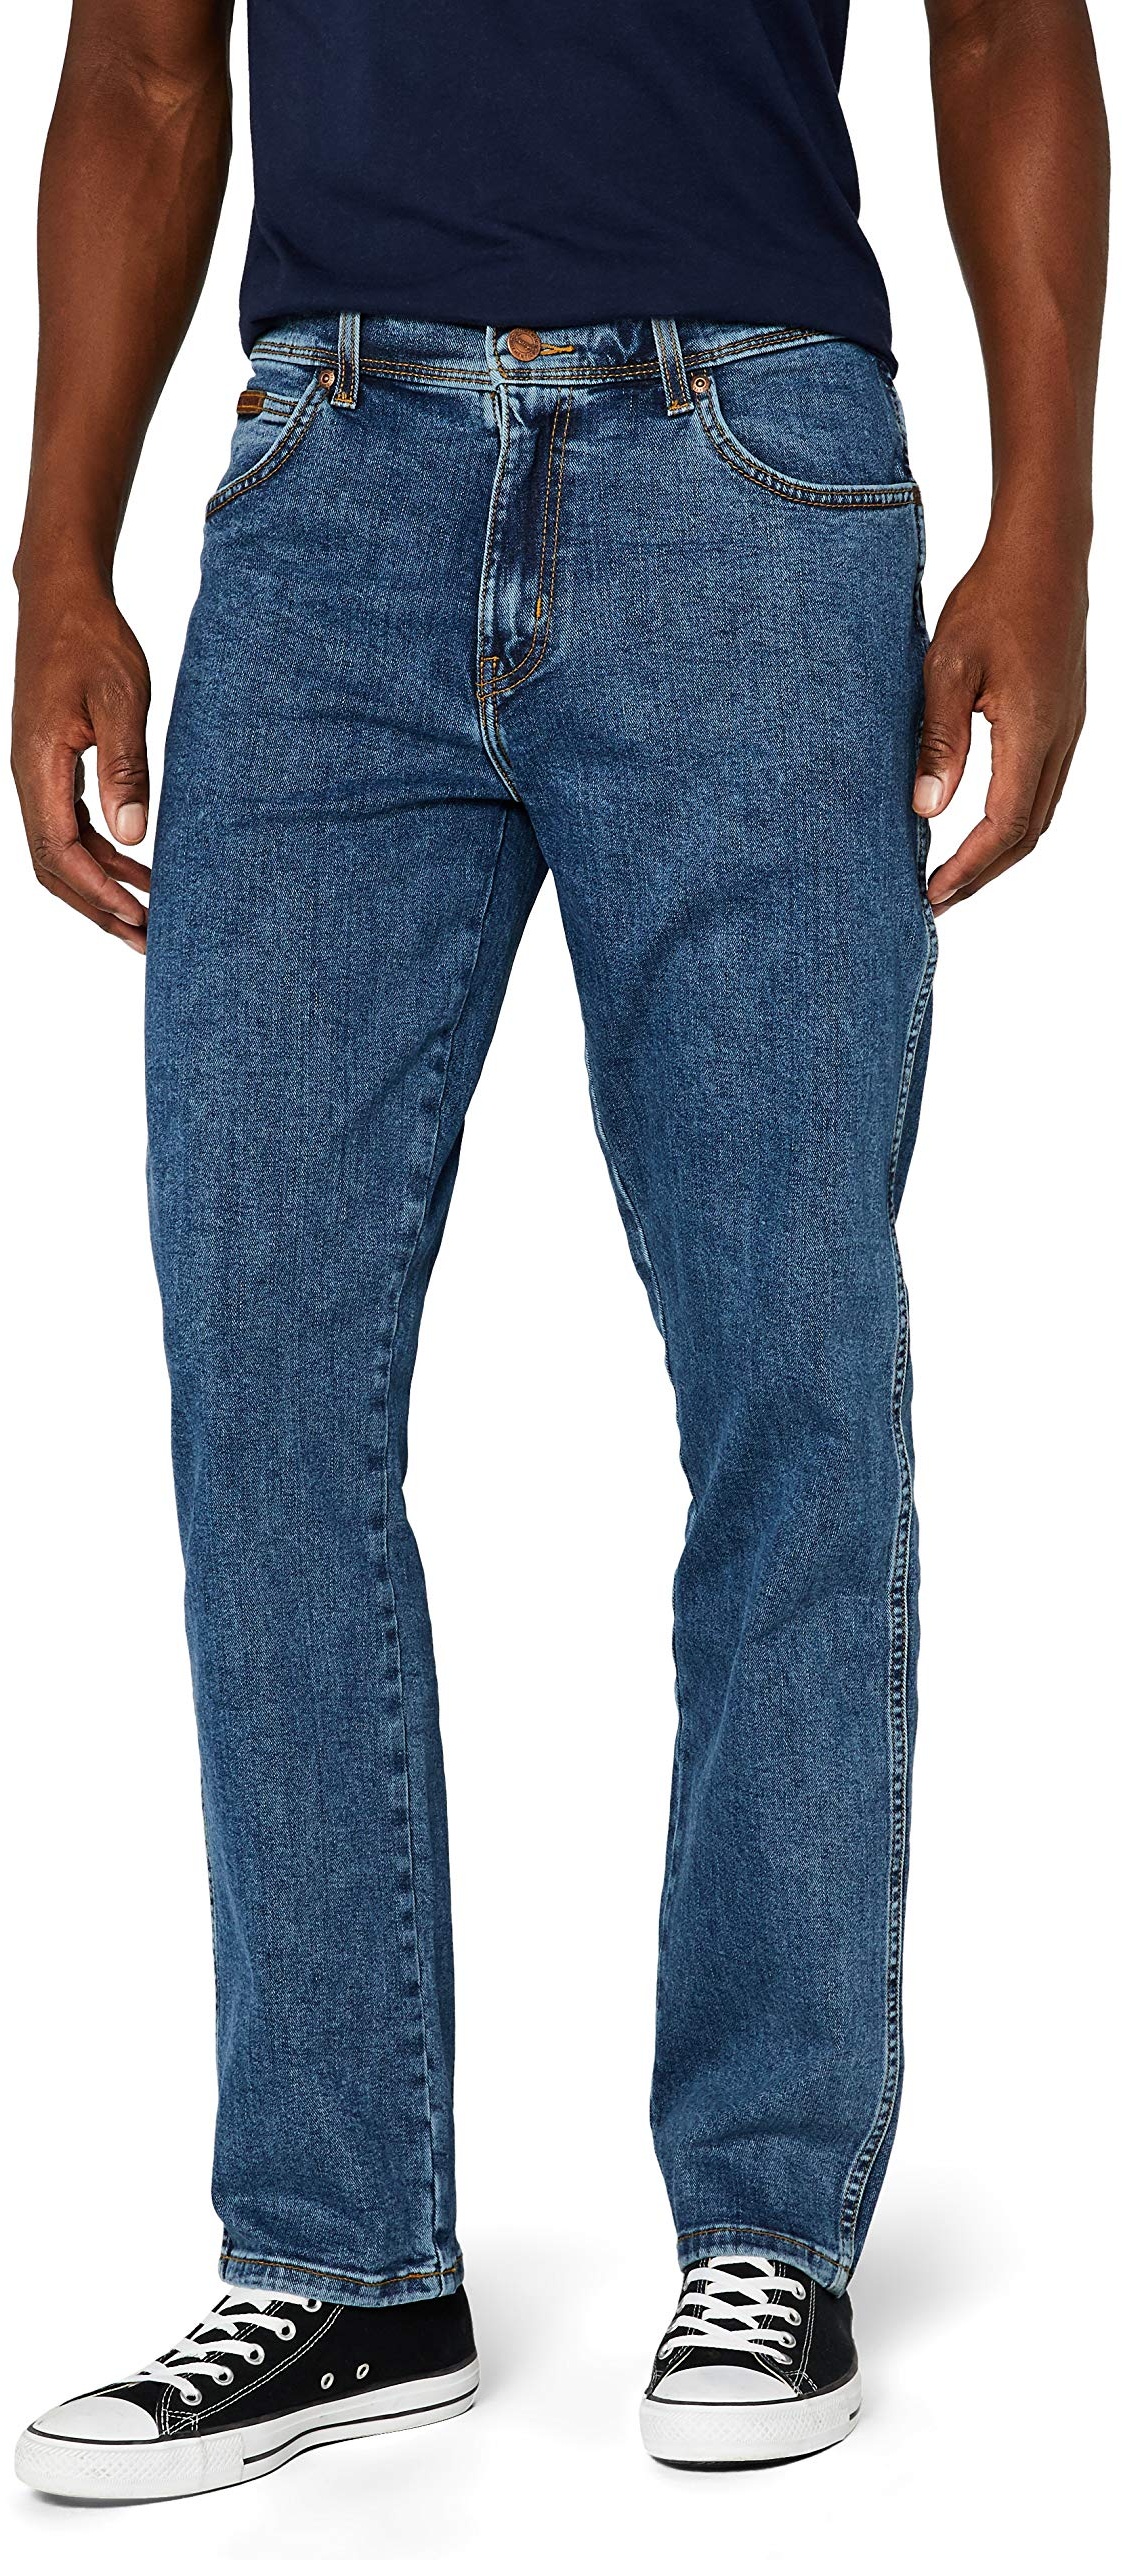 Wrangler Mens Texas Jeans, Stonewash, 36W / 34L